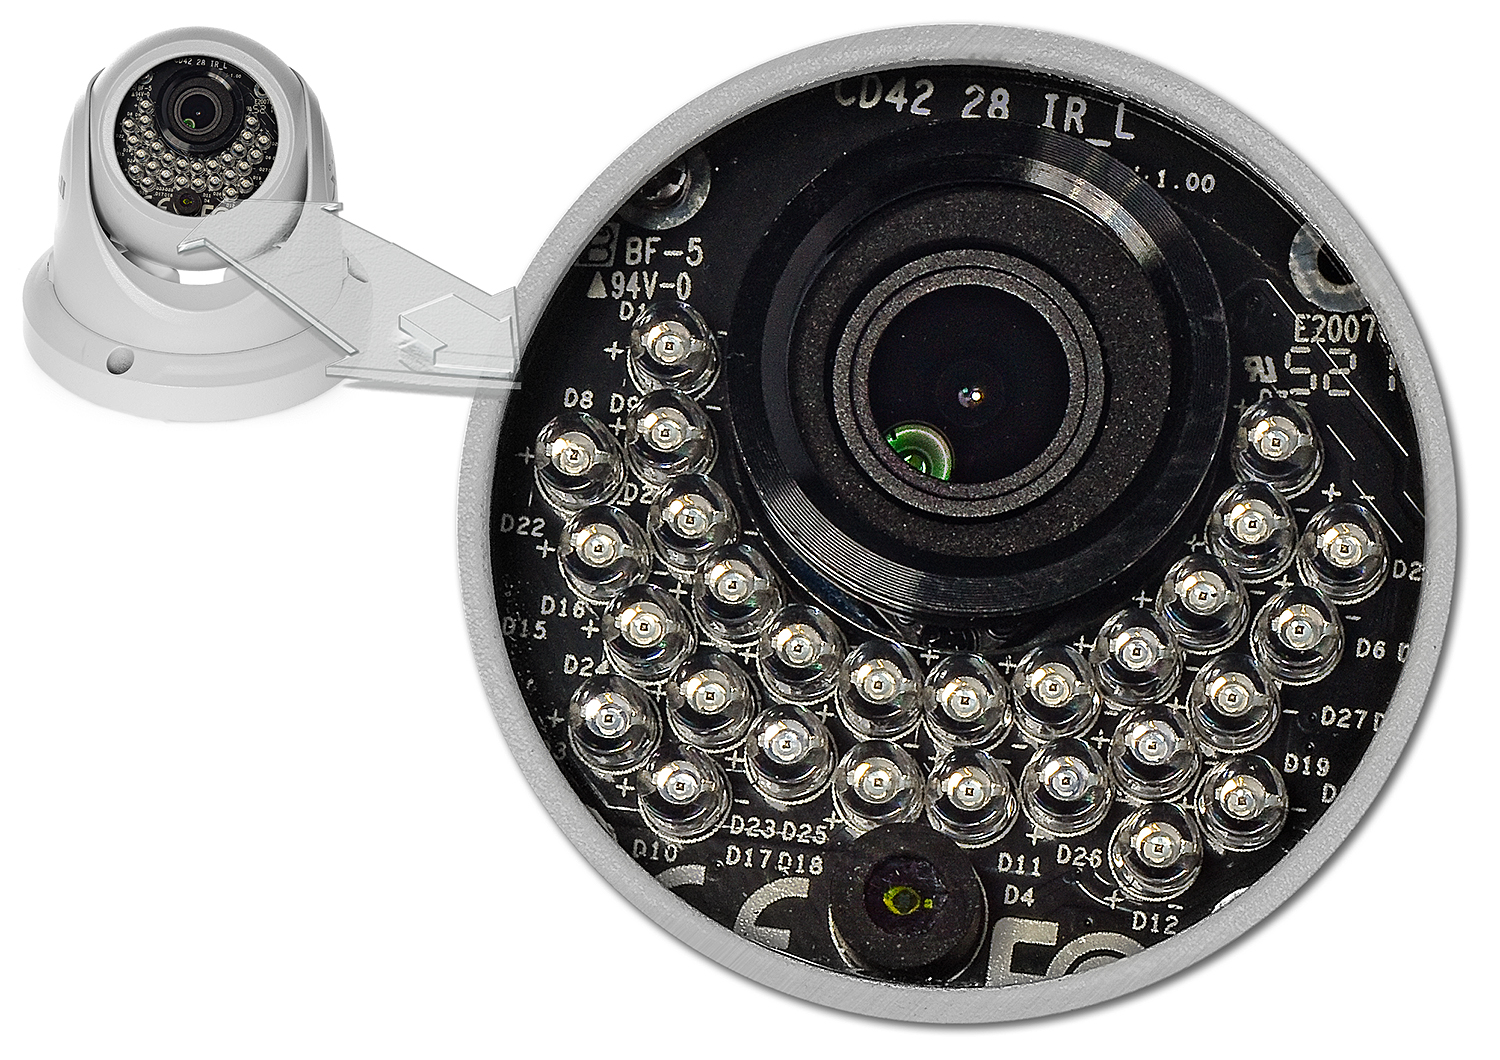 Wydajny system optyczny i solidna obudowa kamery TVI-2533D marki IPOX.